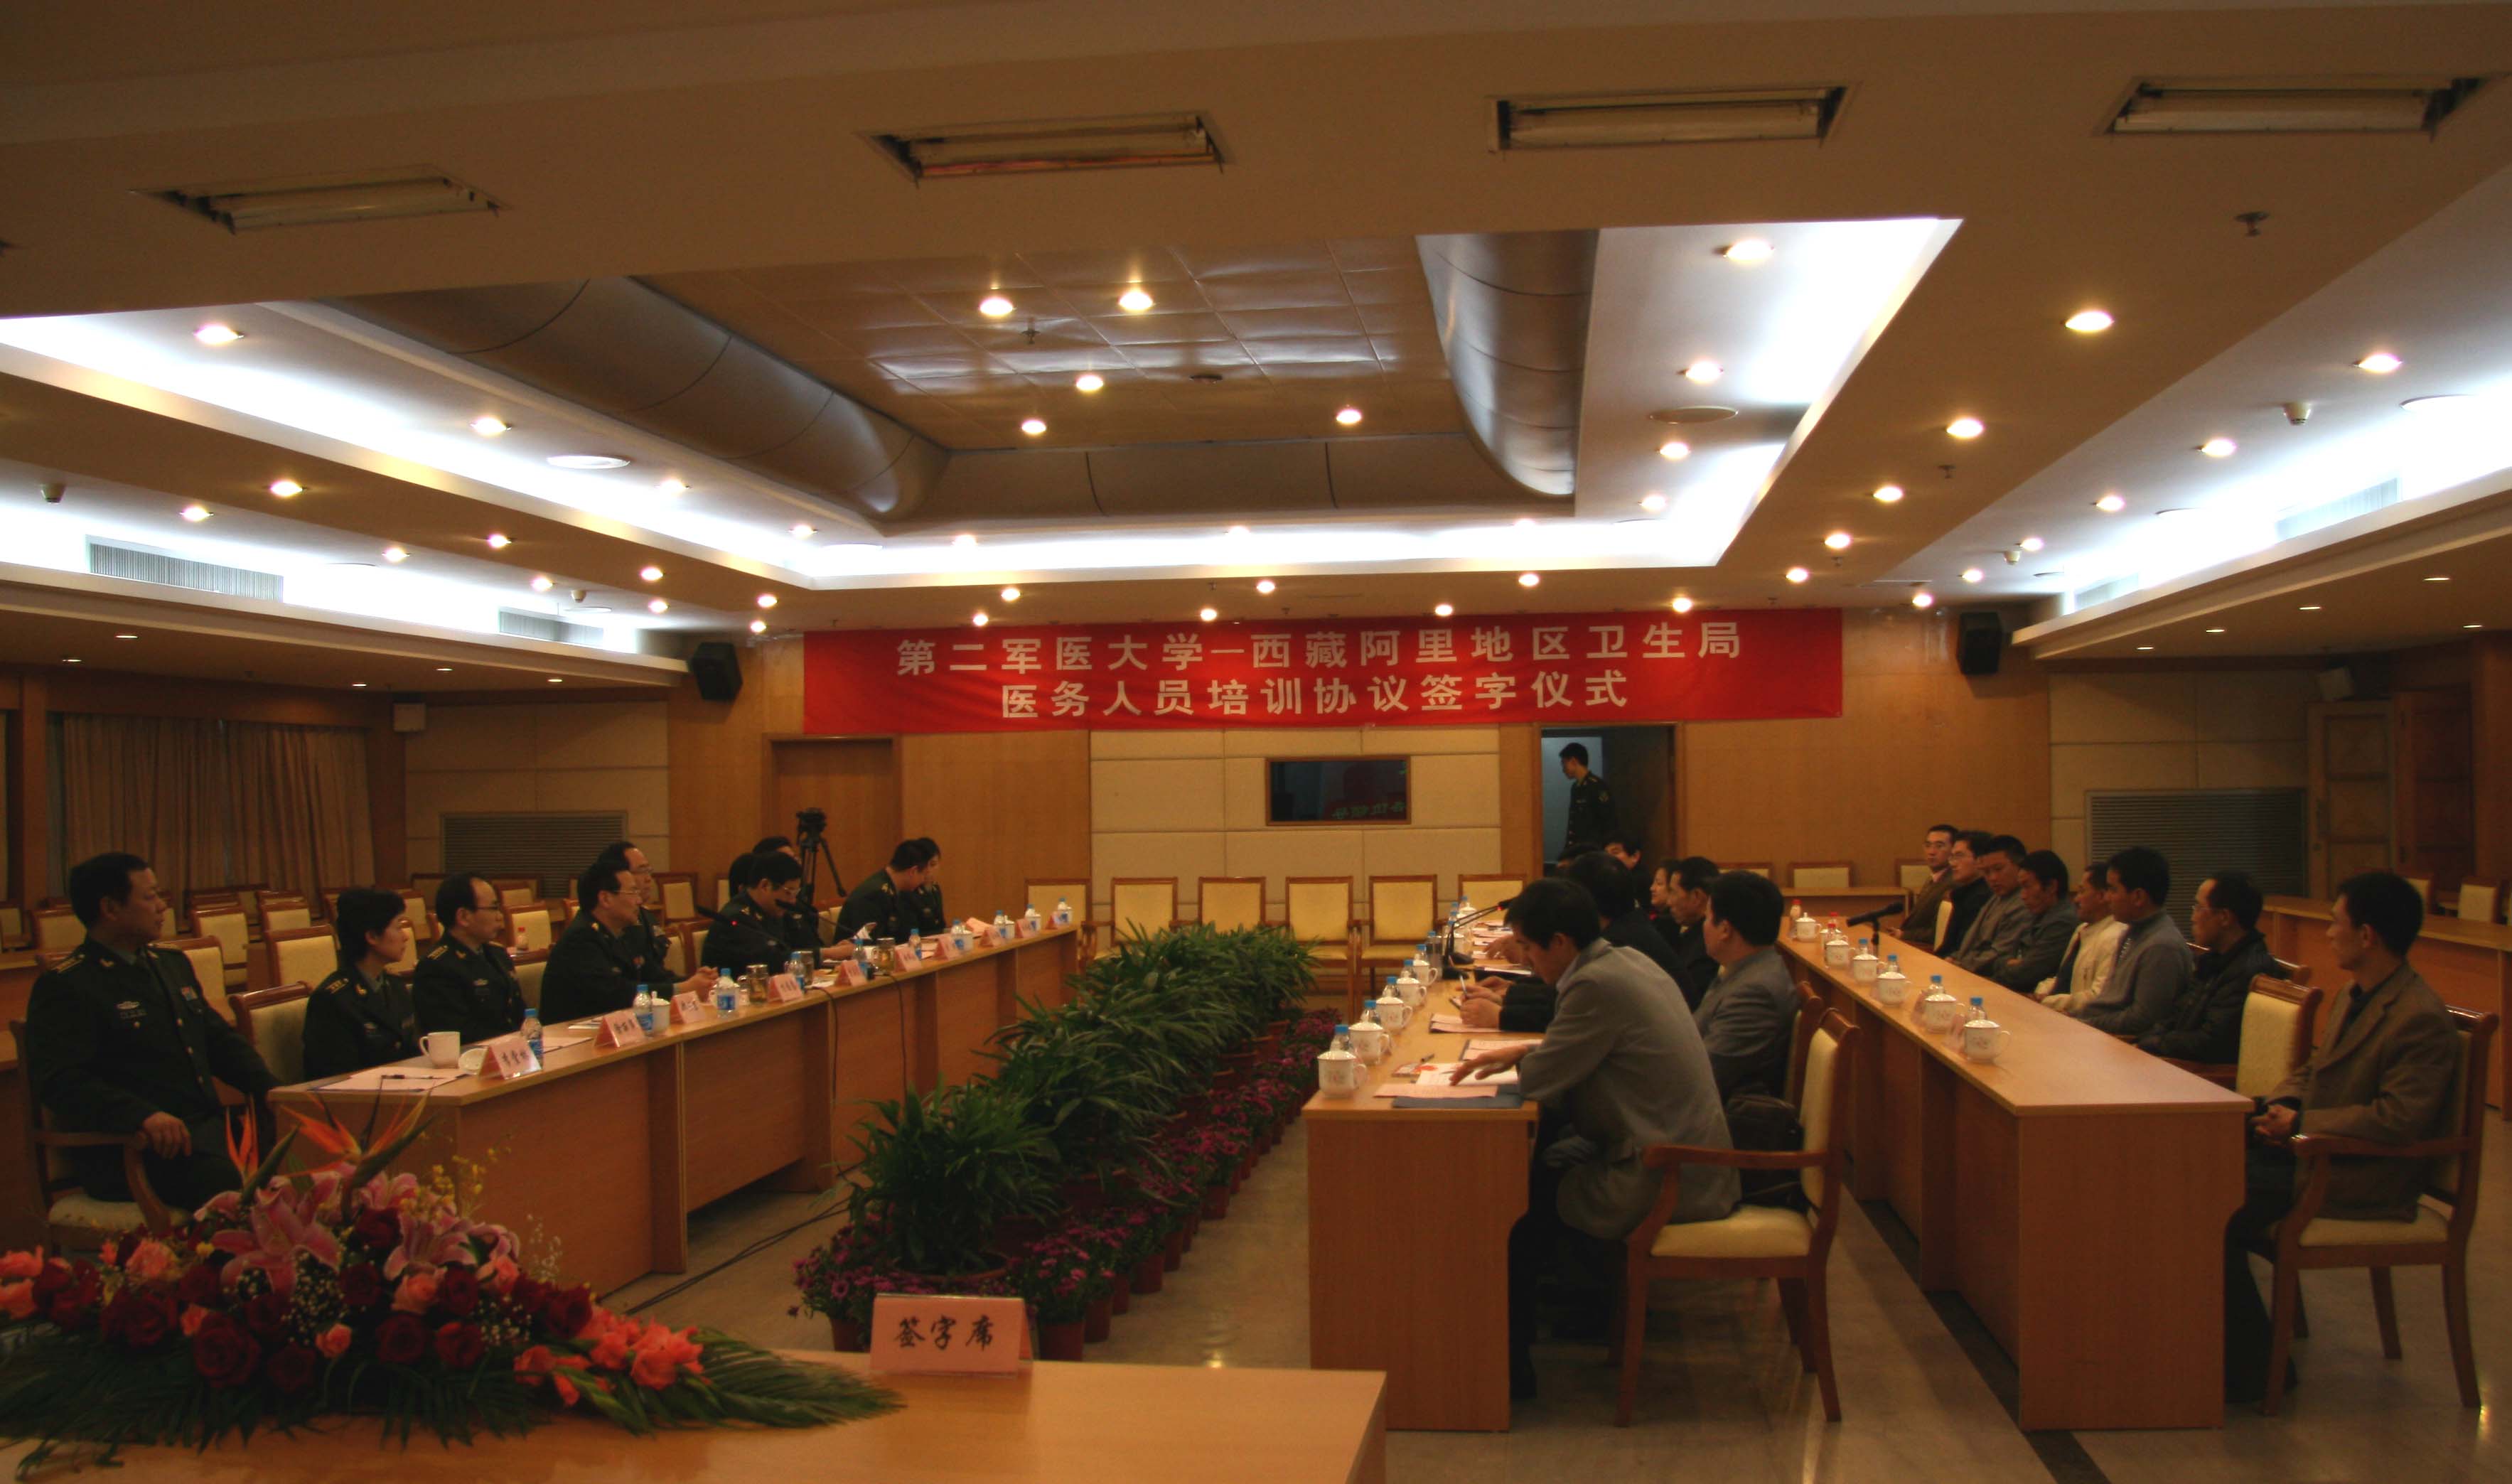 上海第二軍醫大學與阿里衛生局簽字儀式